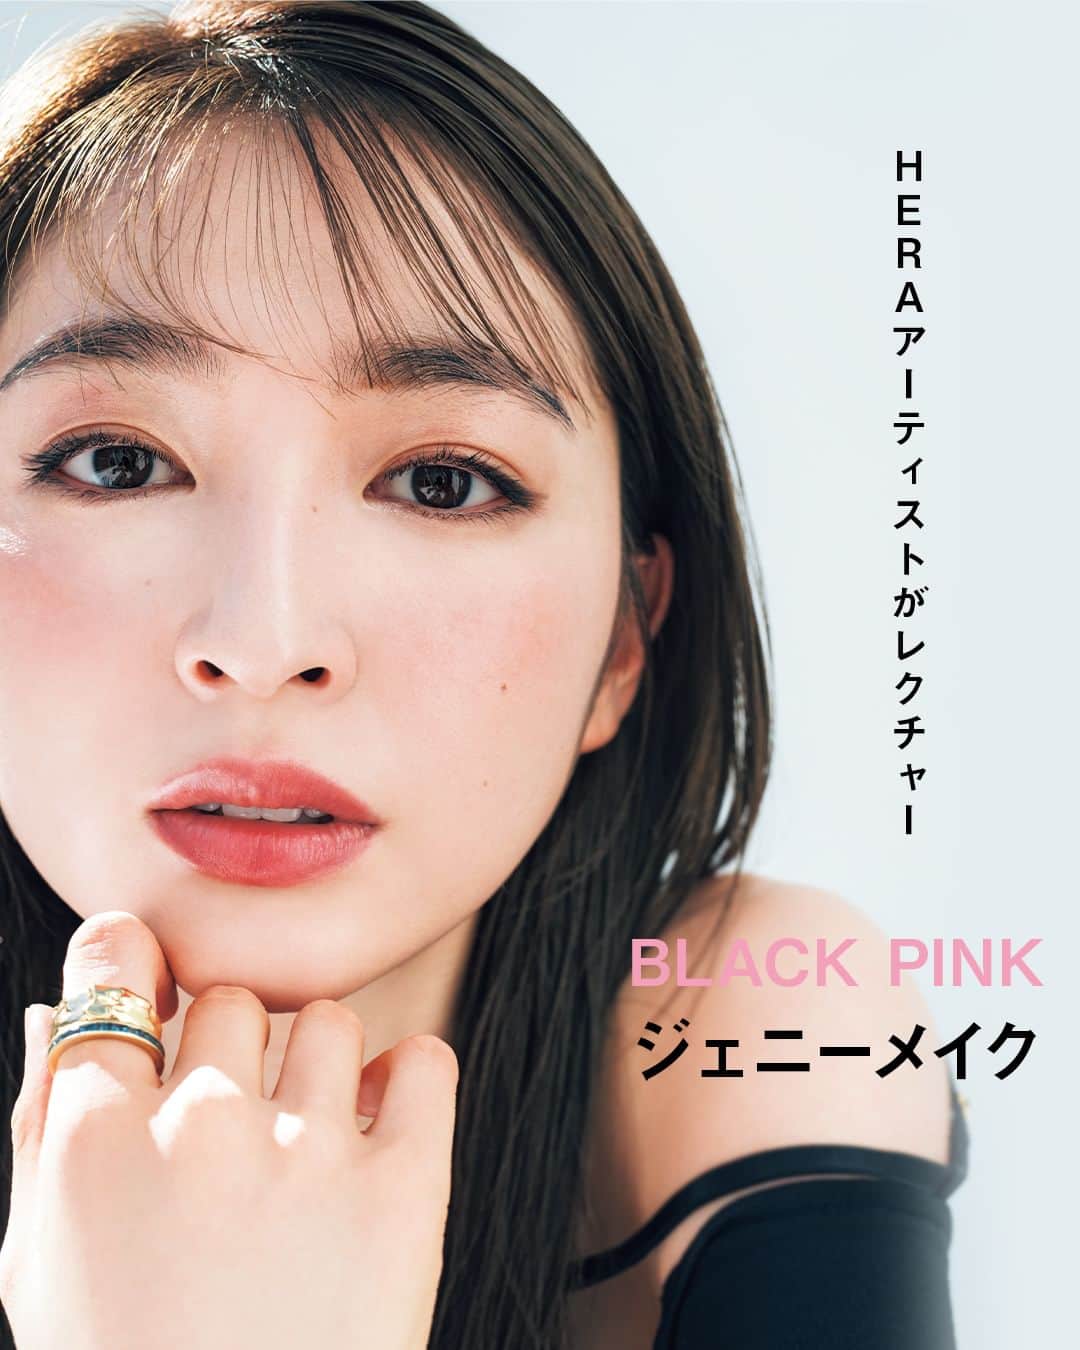 美的 Biteki's official Instagram! のインスタグラム：「＼プロの韓国H＆Mレクチャー／ 【憧れのBLACK PINKジェニー顔になれる！】  美容のプロにもファンが多い韓国コスメや、K-POP、ドラマなどの韓国カルチャー。 日本上陸ブランドも続々と登場し、ますます盛り上がるK-Beauty事情を『美的』フィルターを通して推せるものだけをご紹介！  ■教えてくれたのは… HERA専属アーティスト イ・ジンス先生 アモーレパシフィック HERA専属のチーフメイクアップアーティスト。雑誌やTVなどで活躍するほか、広告ビジュアルのメイクなども担当している。  写真2枚目 HERAアーティスト、イ･ジンス先生に教わる、大人のセンシュアルメイク  ＼ にじむような血色感が上品な色気を演出 ／ 今回ジンス先生に教えてもらったのは、HERAの広告で印象的なジェニーのメイク。 「自然なツヤ肌にアイメイクとチーク、リップまで全体の色味のトーンを合わせることで、その人自身の美しさを生かしながらムードのある印象を演出しています。アイラインで目元は締めつつも、ほかの部分はぼかしながら色をのせていくことで境界線を作らず色味が顔の曲線に沿って流れるようなメイクに仕上げました。」（ジンス先生）   【HERAとは】 韓国･ソウル発のラグジュアリーメイクアップブランド。“Here, Now, Myself”をキーワードに、自分らしい美しさを大切にした洗練されたメイクで韓国でも屈指の人気。BLACK PINKのジェニーがアンバサダーを務めていることでも話題。7月に待望の日本上陸。 ジンス先生流大人の韓国メイクのポイント  3枚目 ＼ 目尻のはね上げラインでぐっと色っぽく ／ ナチュラルに見えて、トーンを合わせた色味を重ね作り込み、コンサバなようで、ポイントで色気をプラス！  ☑️Point 1．大人のツヤ肌には 保湿 が最重要！ 2．アイラインは 目尻を強調 、シンプルなアイシャドウとメリハリをつけて 3．唇は輪郭をぼかして ぽってりリップ に♡  4枚目 【使用アイテム】 1．古い角質を取り除き明るい肌へ導く。 HERA ハイドロデュー PPウォータードロップ 50ml　￥6,820  2．潤ってハリ肌に整える。 HERA ハイドロデュー PPセラム 50ml　￥6,820  3．肌をなめらかに整えUVカット。 HERA  UVプロテクター マルチディフェンス フレッシュ SPF50+・PA++++ 50ml　￥5,610  4．毛穴をカバーするパウダー下地。 HERA エアリーパウダープライマー 8.5g　￥6,490  5．ベルベット肌が24時間続くクッションファンデ。 HERA ブラッククッション SPF34・PA++ 15g×2 21N1　￥7,700  6．自然な陰影が生まれるパレット。 HERA クアッドアイカラーシャドウ #3　￥6,820  7．細部まで繊細に描けるアイライナー。 HERA アイデザイナーペンシル ブラック ￥3,190  8．保湿力抜群のカラーバーム。 HERA センシュアルヌードバーム #356　￥4,400  9．軽いつけ心地のマットリップ。 HERA センシュアルパウダーマットリキッド #145　￥4,400  5枚目 メイク方法 ＼ じゅわっと発色したリップが可憐な印象に ／  BASE 1と2で肌をしっかりと保湿しの3のUV下地を薄く塗り、肌をなめらかに整える。4のパウダー下地で過剰な油分を防ぎつつ、毛穴をぼかす。5を付属のパフにとり、薄く全顔に広げる。少量ずつ丁寧にたたき込み重ねづけすることがキレイに仕上がるポイント。メイク前に入念に保湿することでくずれにくくなり内から自然と輝くようなツヤ感のある肌に。  EYE 6の左上を付属のチップもしくはブラシにとり、アイホールと下まぶたに塗り、右上を黒目の中央から外側へぼかしながら塗る。左下の締め色をアイライナーブラシにとり、目尻から長めにはね上げる。7を使いまつげの間を埋めていく。アイシャドウは控えめにする分、アイラインでしっかり締めるのがポイント。  CHEEK 8をスポンジにとり頬骨の上に楕円状にタッピングしてなじませる。  LIP 8を全体にざっくりとじか塗りした後、9を唇の中央に塗りなじませる。最後にブラシや小指を使い唇の輪郭をぼかすことでオーバーリップに。  #上西星来 #イジンス #HERA #BLACKPINK #ジェニー #クリスマスコフレ2023 #bitekicom #コスメ好きさんと繋がりたい #メイク好きさんと繋がりたい #今日のメイク #美的 #美的メイク #メイク好き #女子力向上委員会 #美容好きな人と繋がりたい #コスメ #今日のコスメ #コスメオタク #美肌になりたい #美容好きさんと繋がりたい #美意識高い人と繋がりたい #コスメ好きな人と繋がりたい #美容垢さんと繋がりたい #メイク好きな人と繋がりたい #美活」